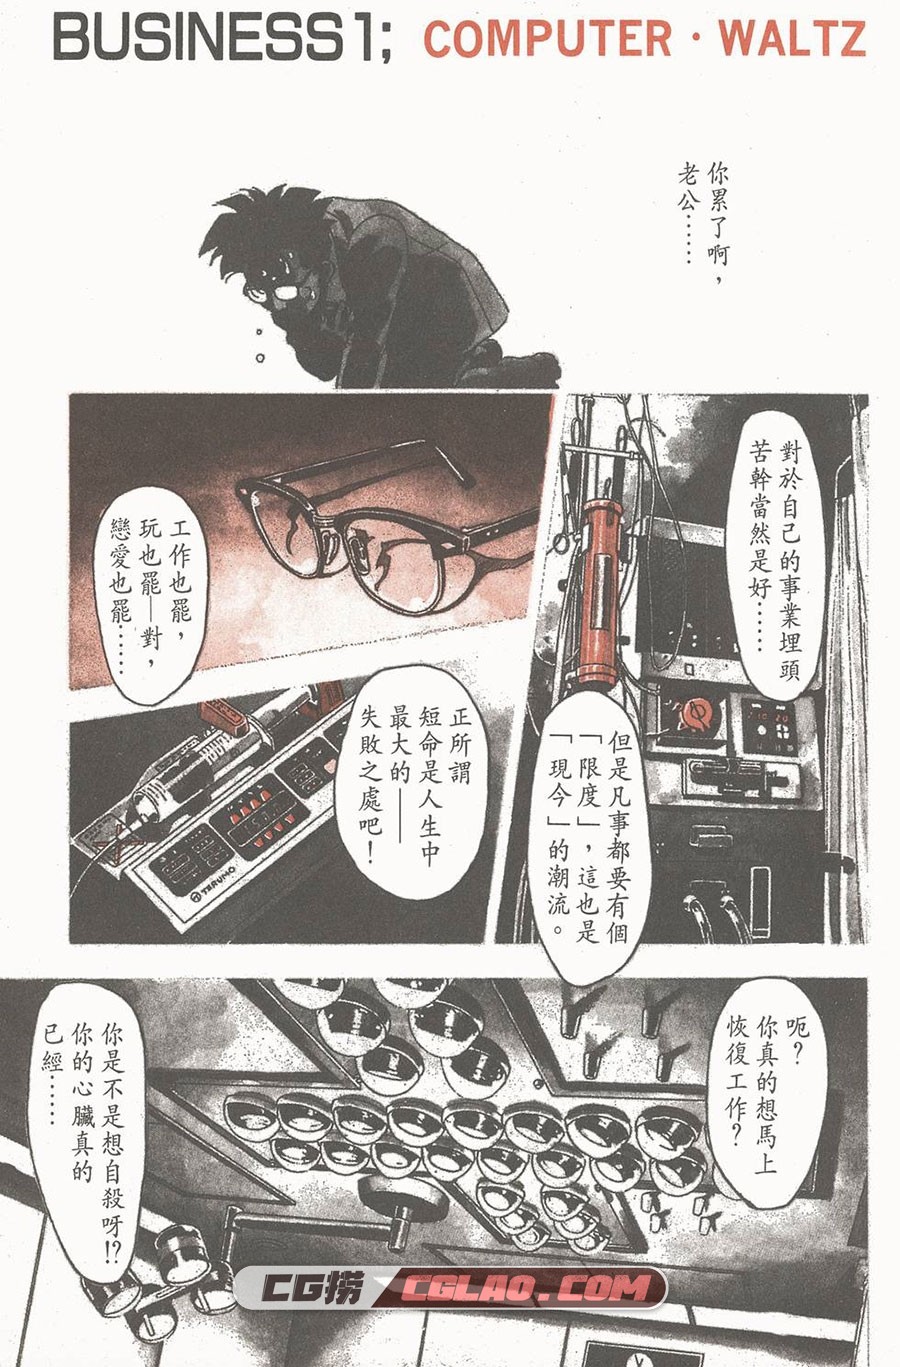 企业战士 富泽顺 1-12卷 漫画完结全集下载 百度网盘,0004.jpg